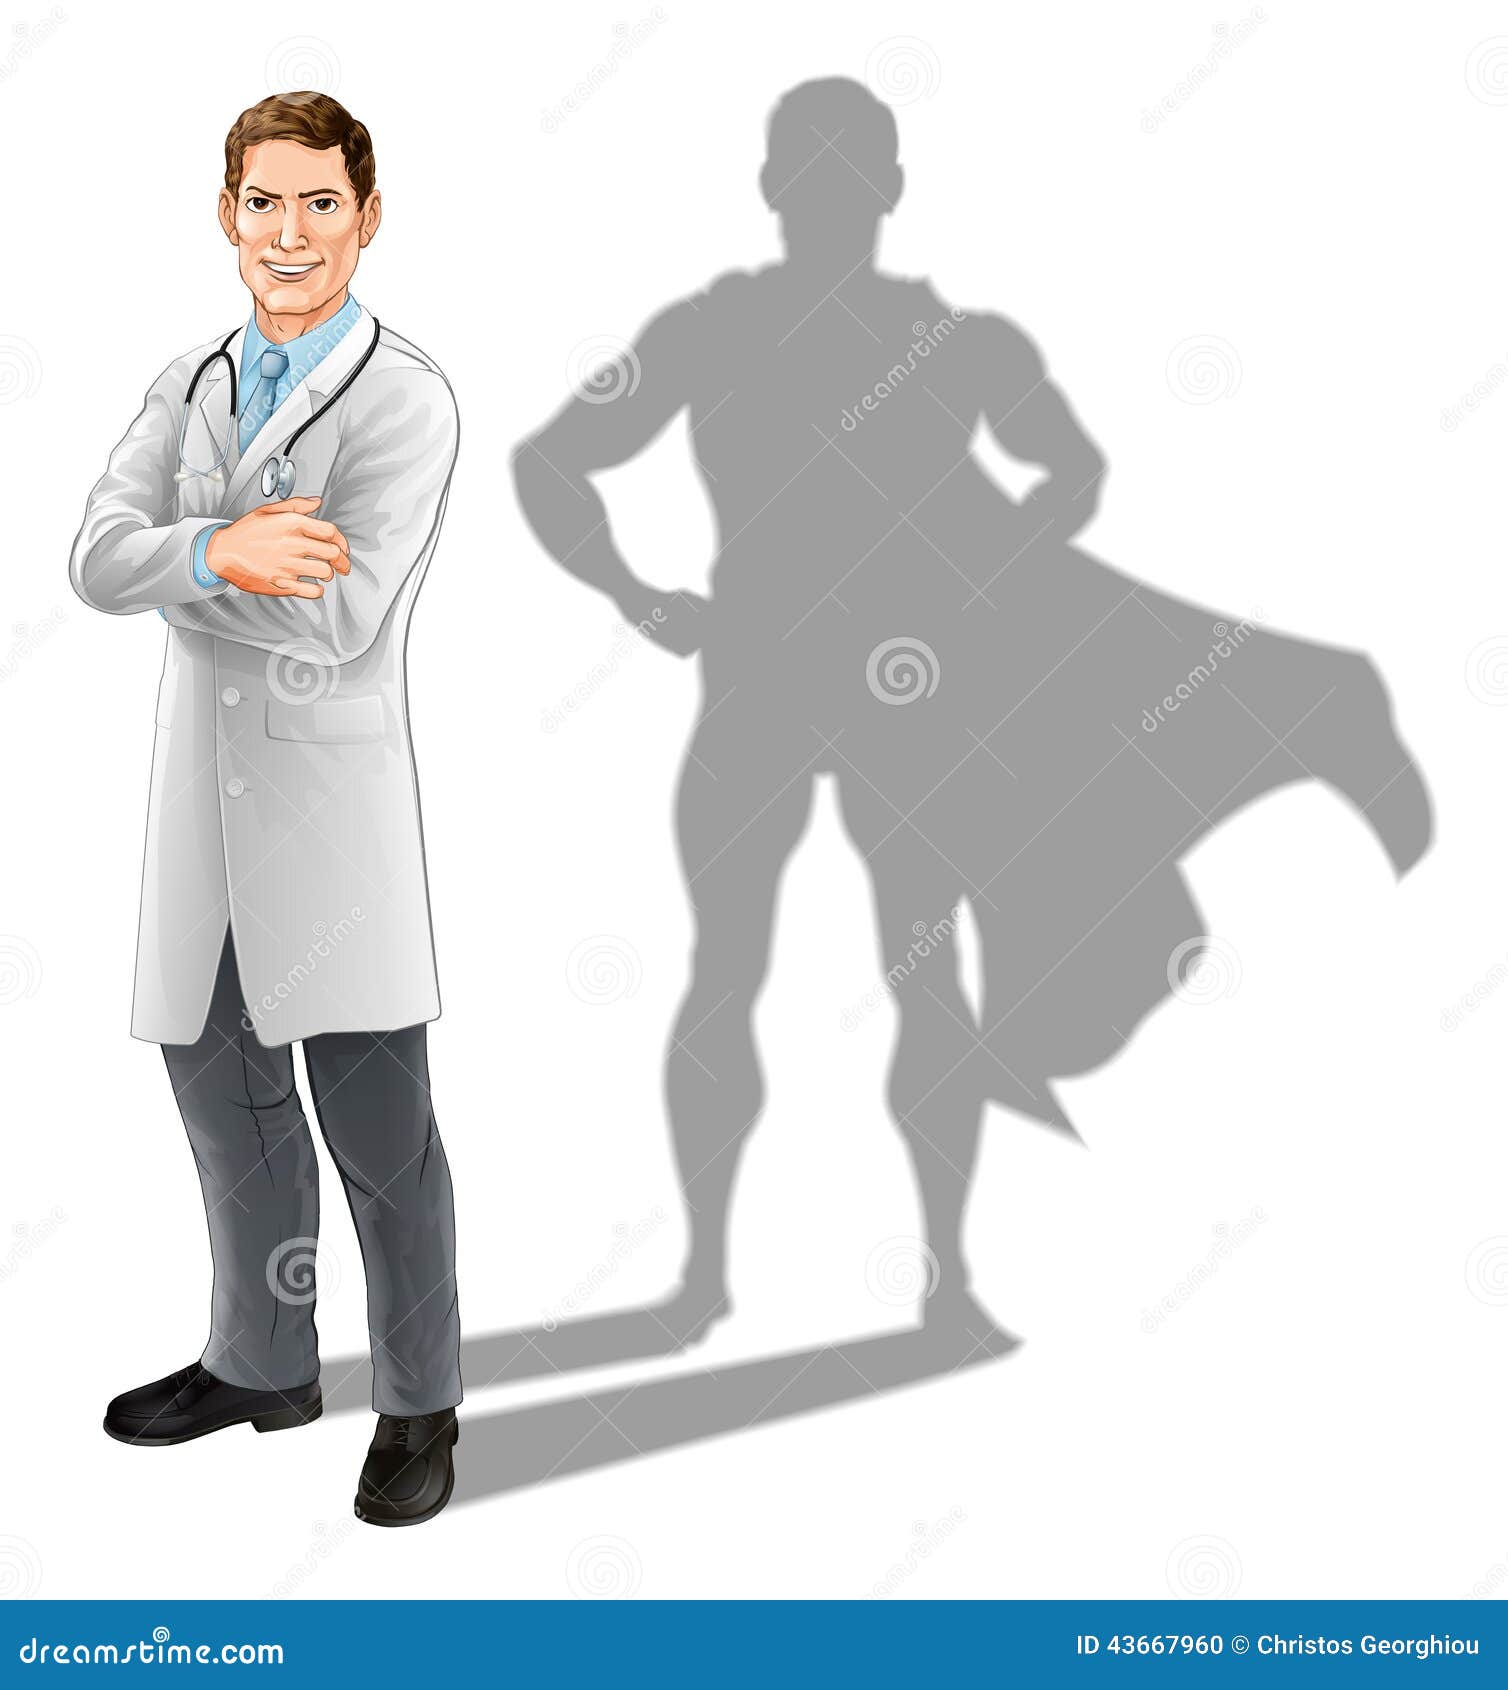 Представил героя как человека. Врач Супергерой. Медики герои. Стилизованное изображение доктора. Доктор герой.